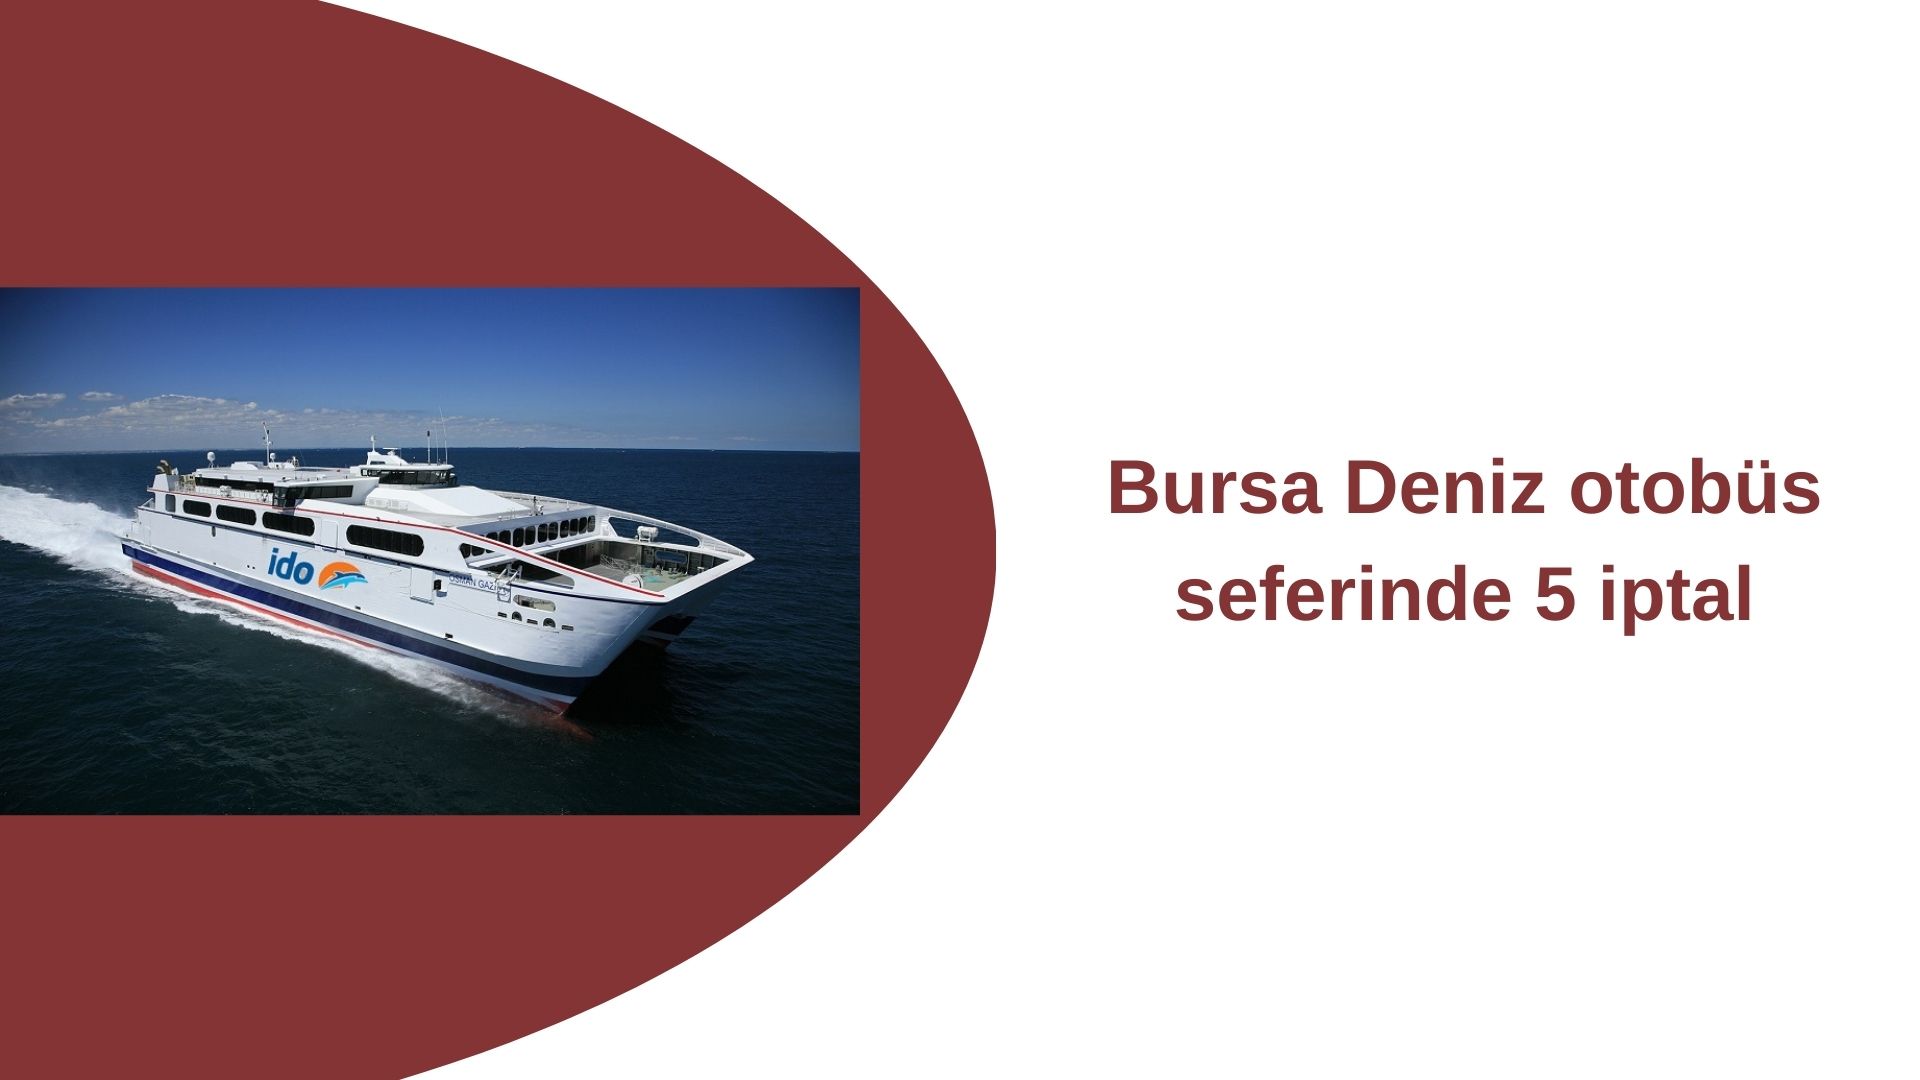 Bursa Deniz otobüs seferinde 5 iptal